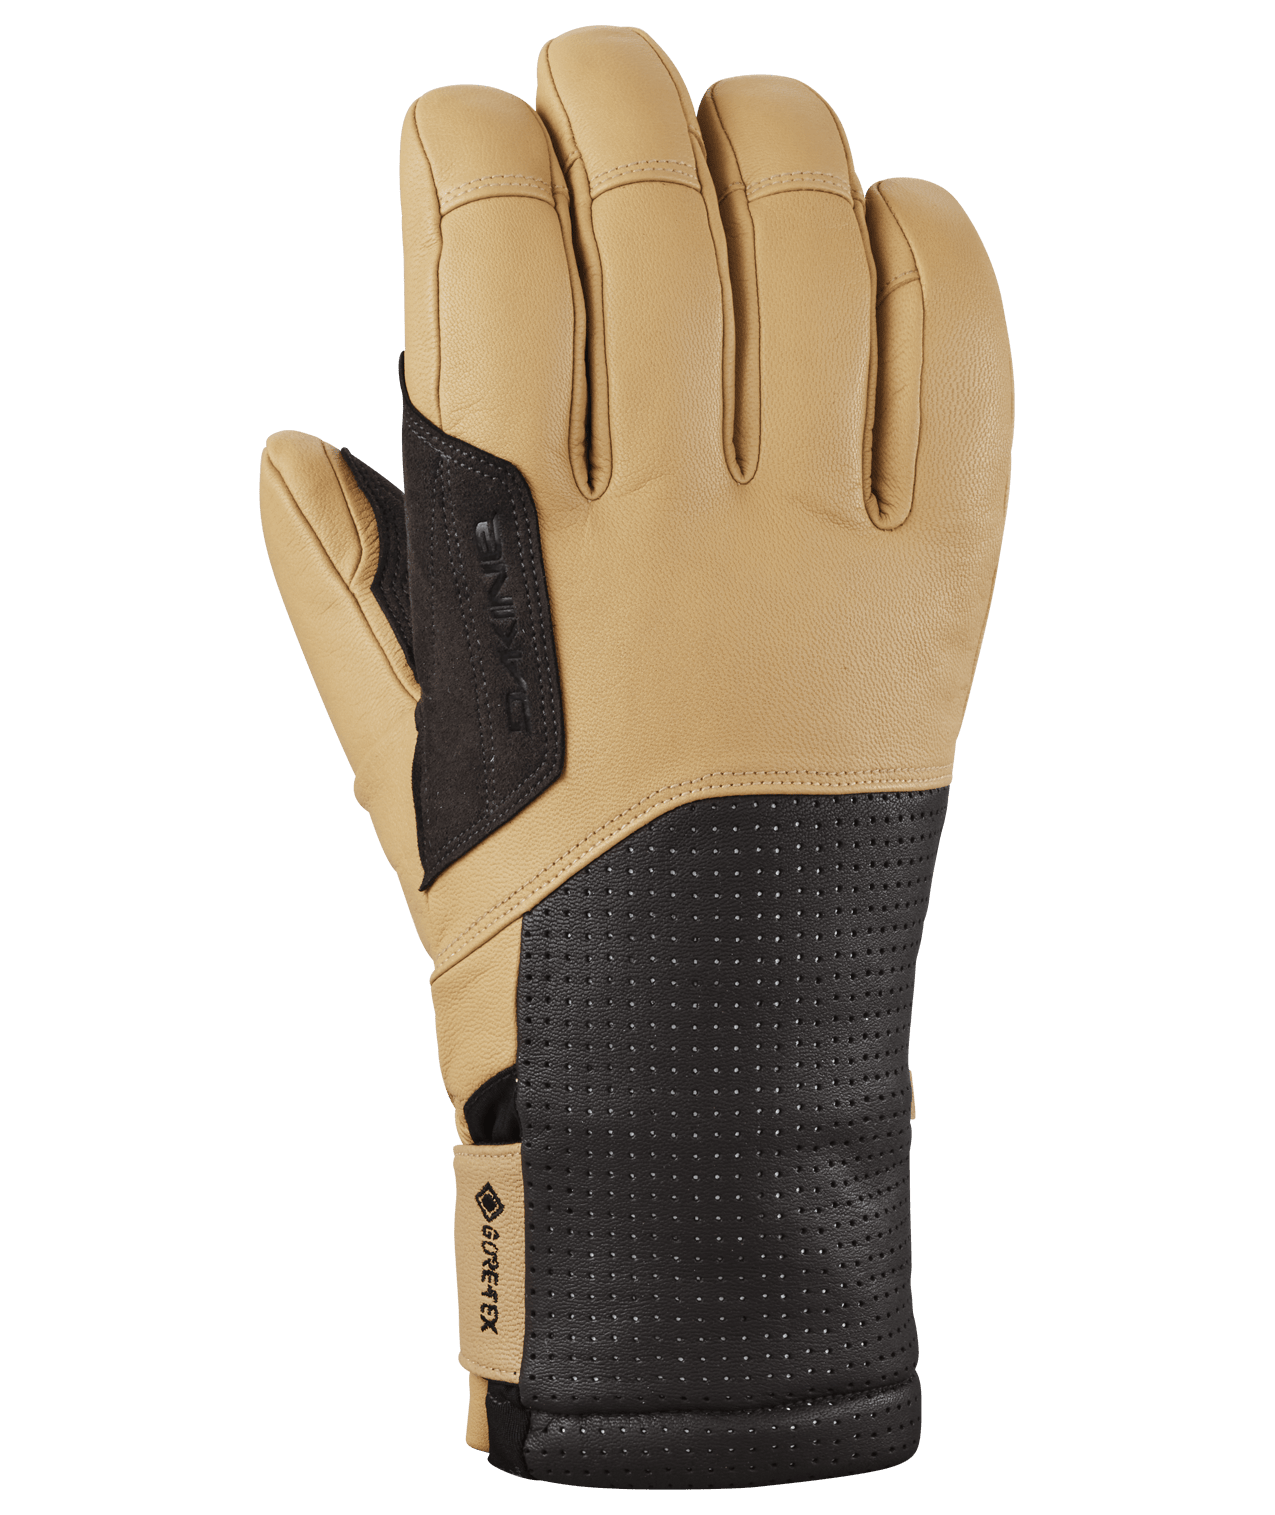 DAKINE Kodiak GORE-TEX Glove Tan Men's Snow Gloves Dakine 